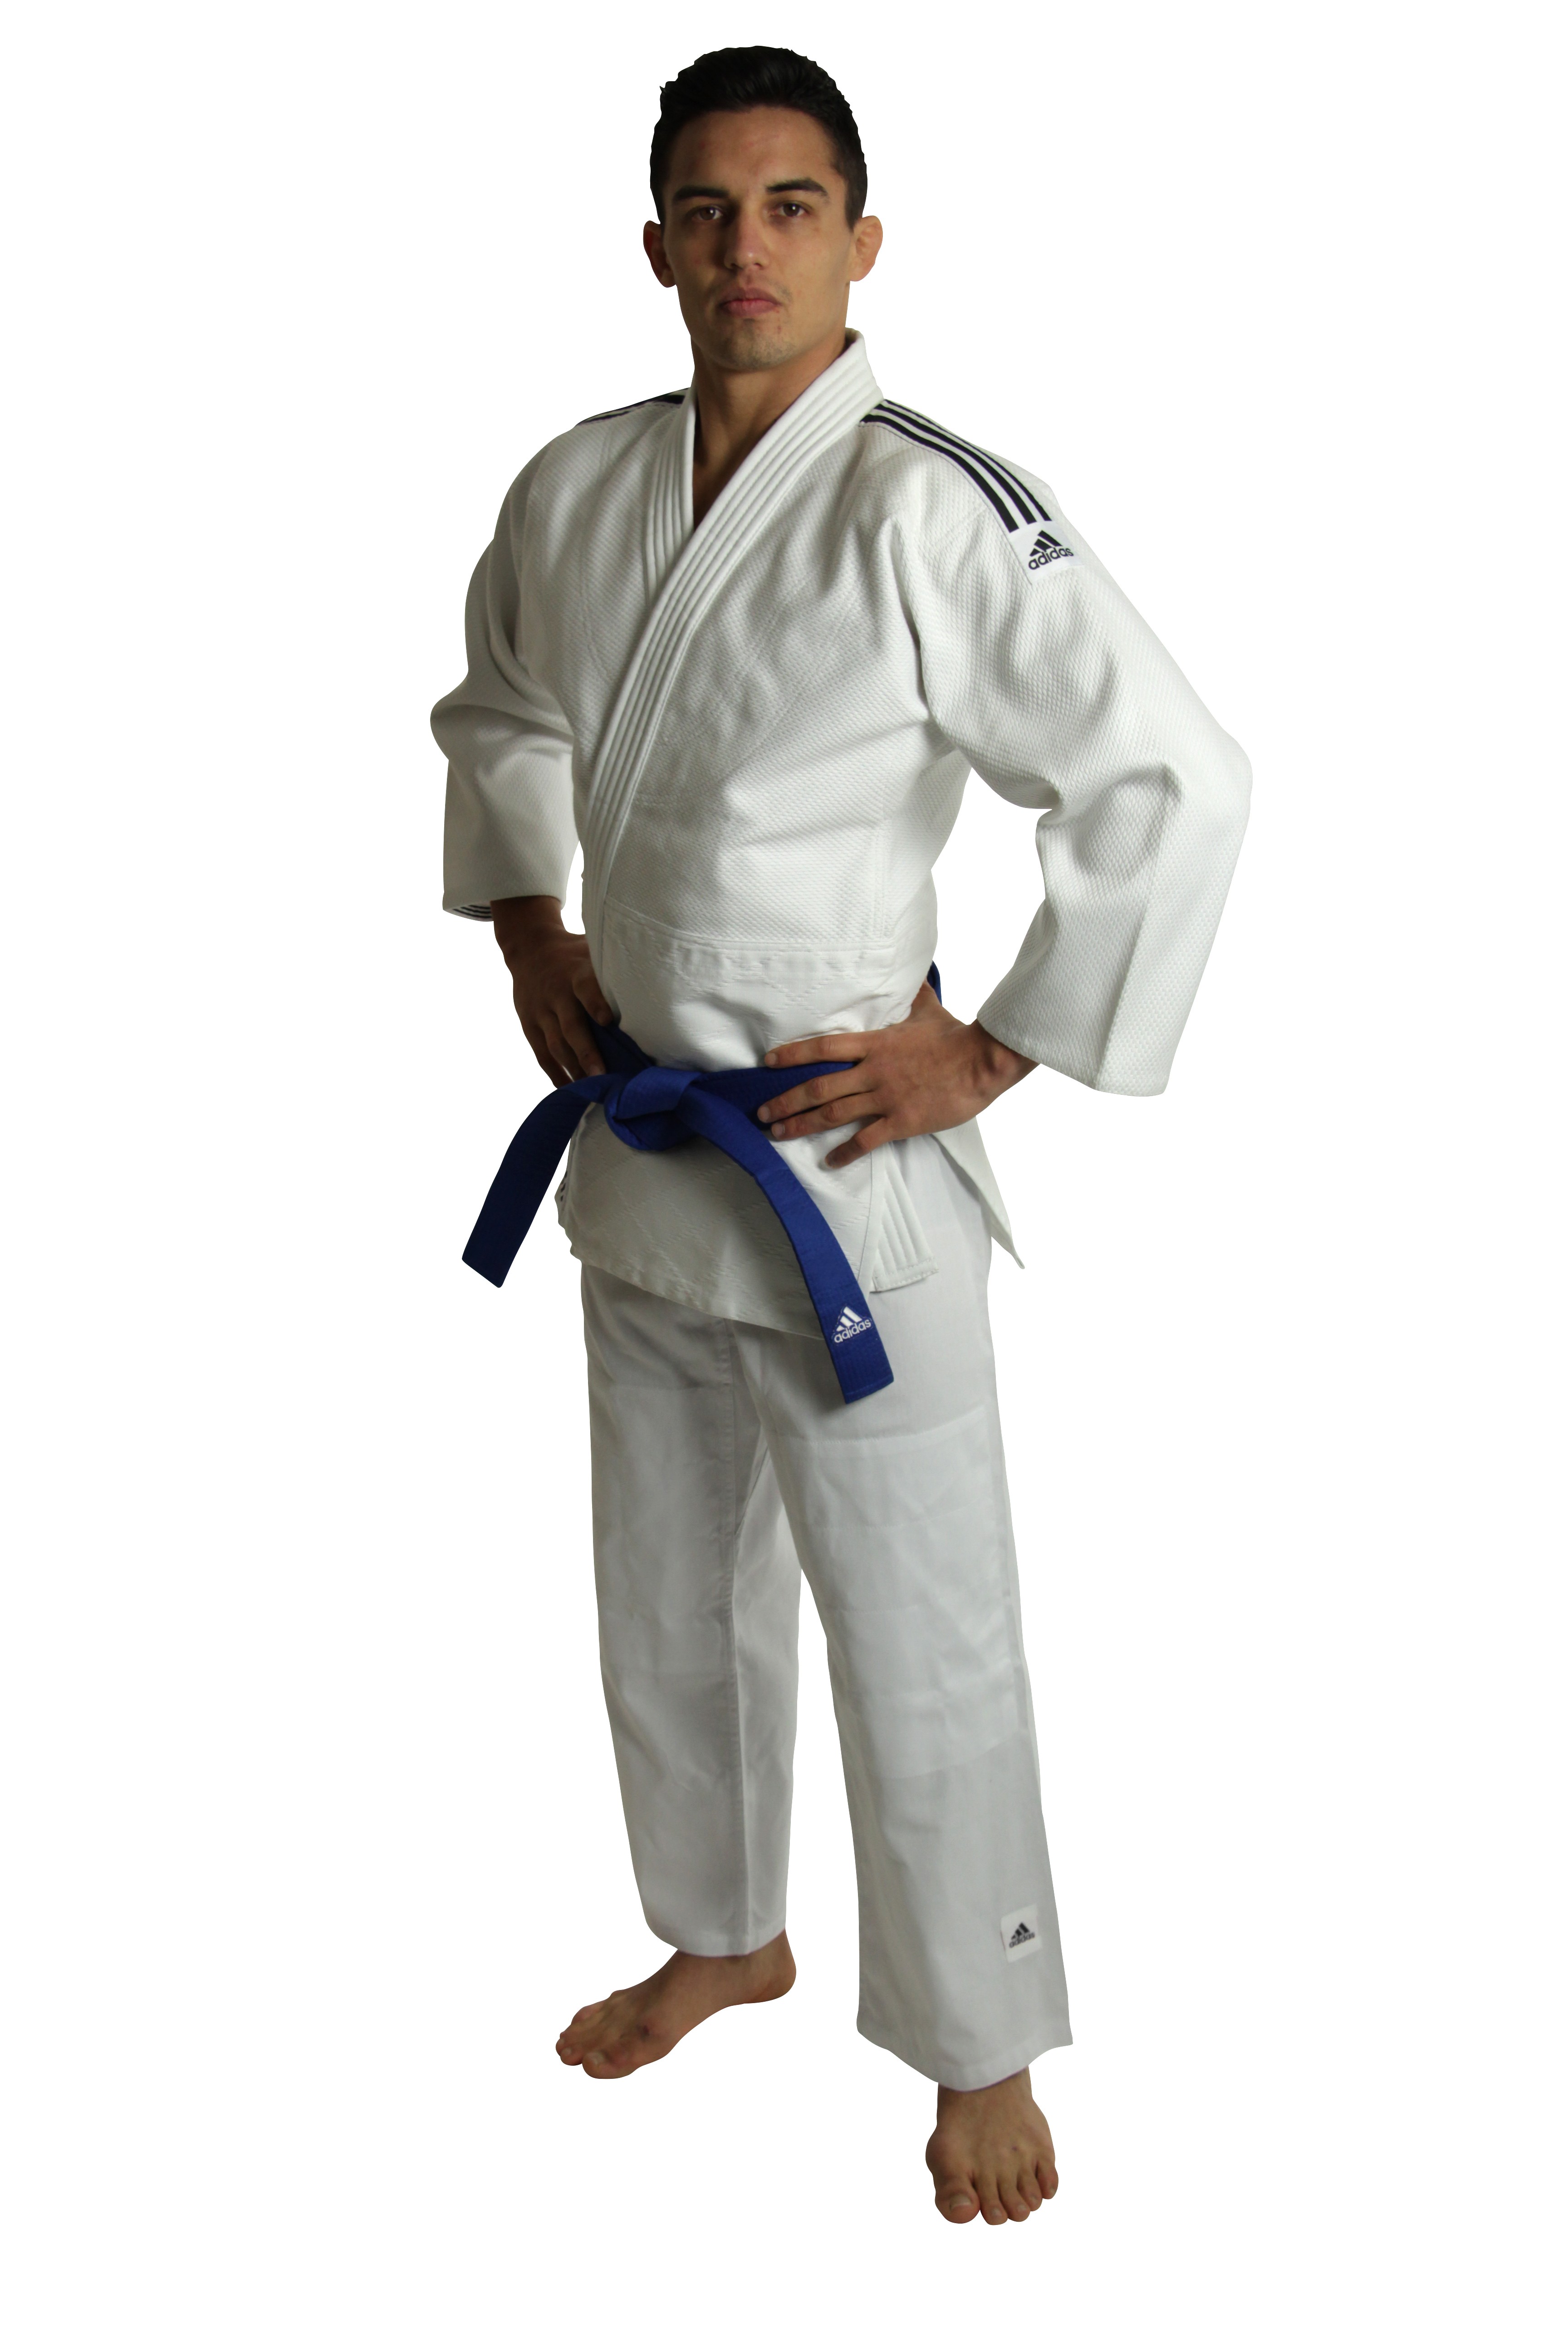 kimono adidas training judo